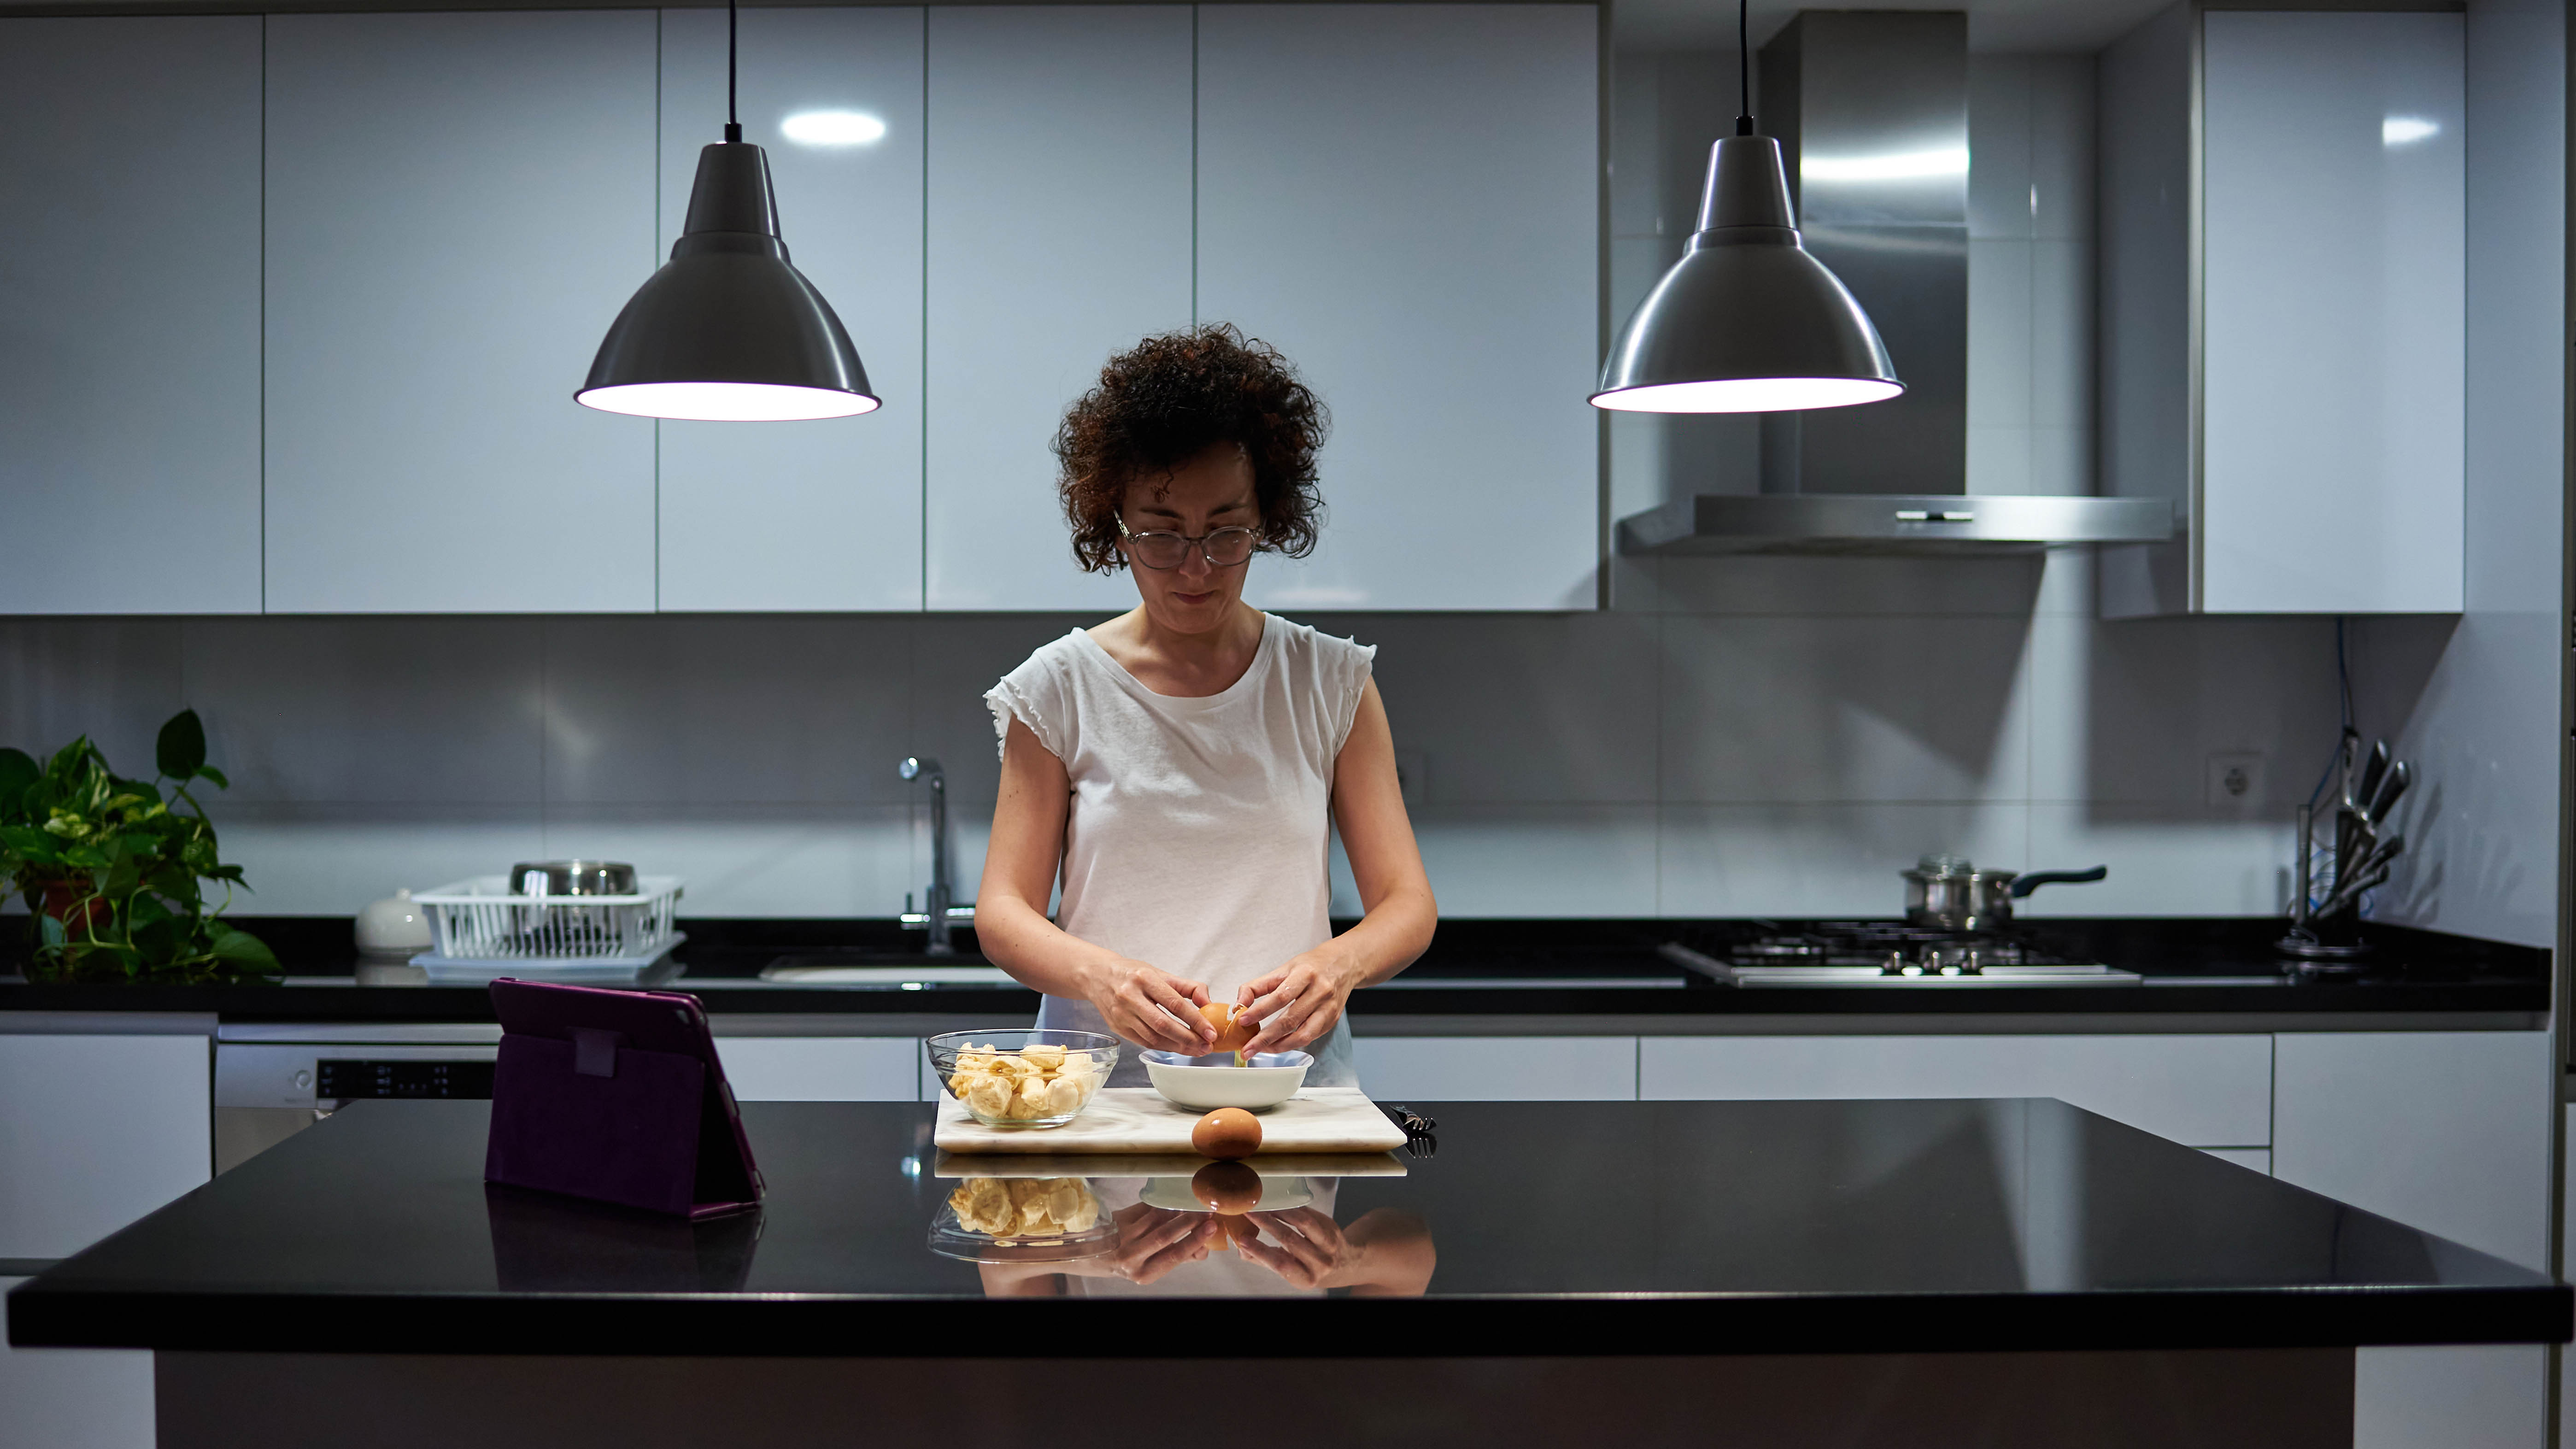 Işık açıkken geceleri mutfağında yemek hazırlayan bir kadın